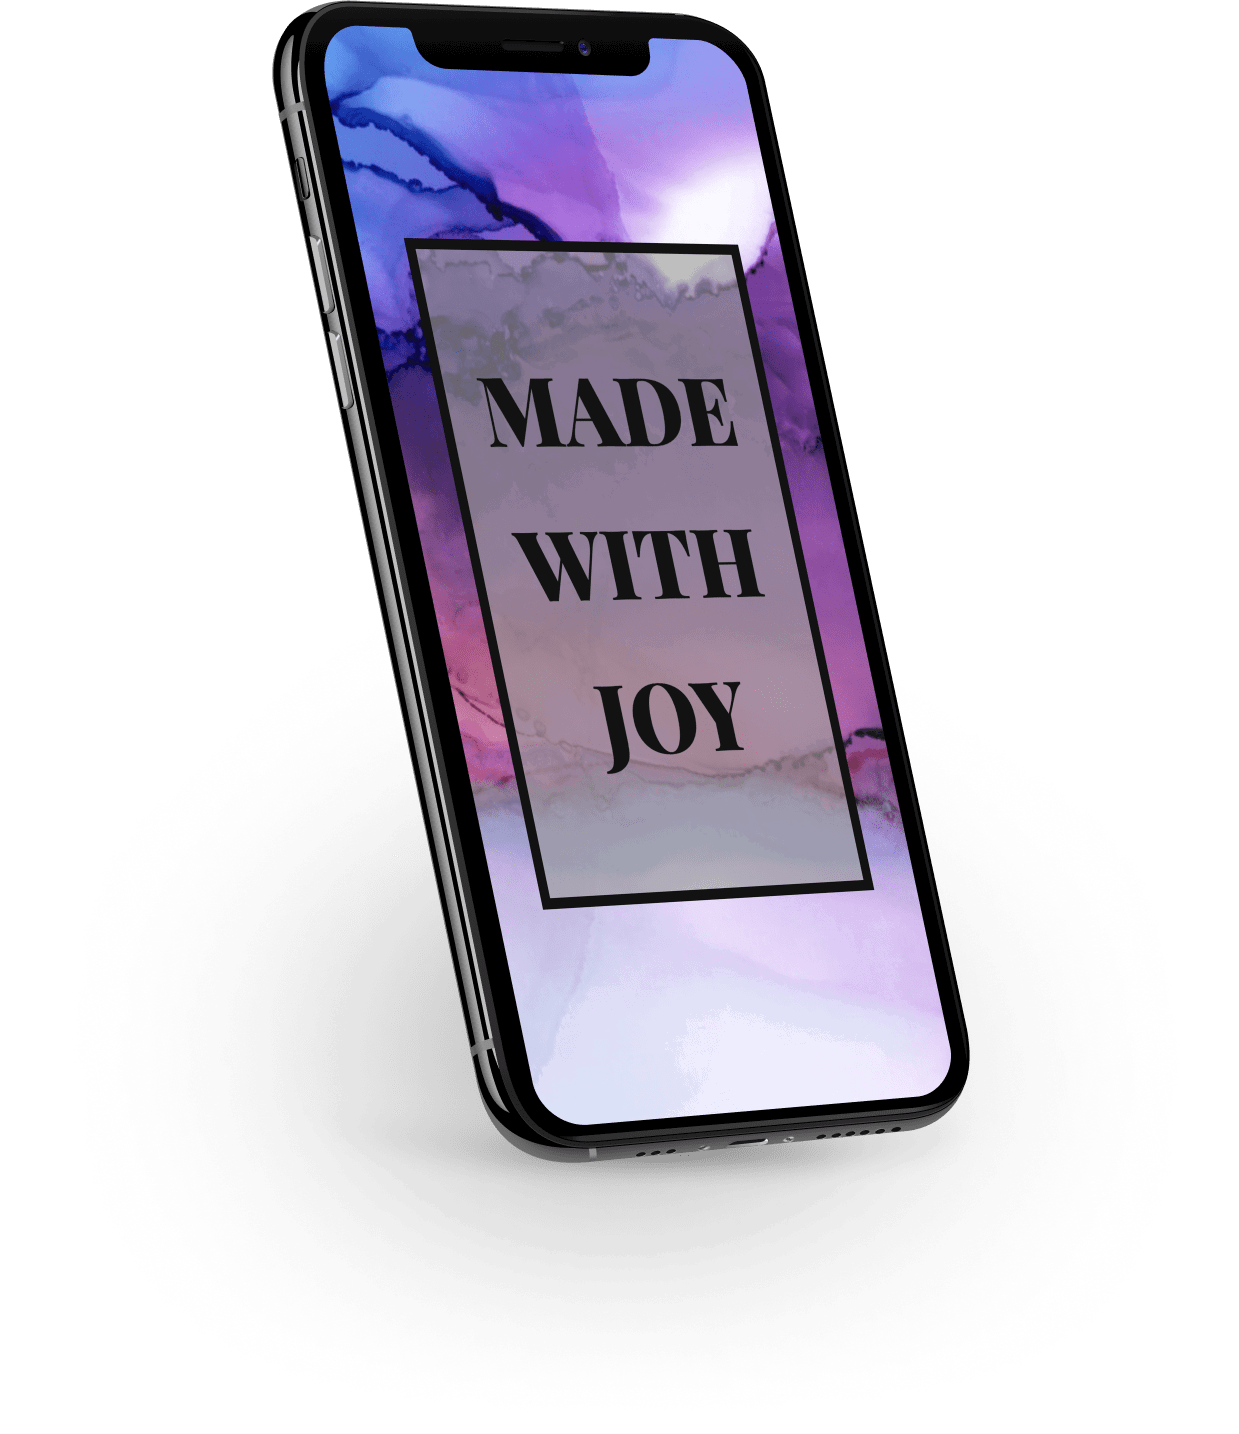 Mobiltelefon mit dem Spruch "Made with joy" und buntem Hintergrund am Display